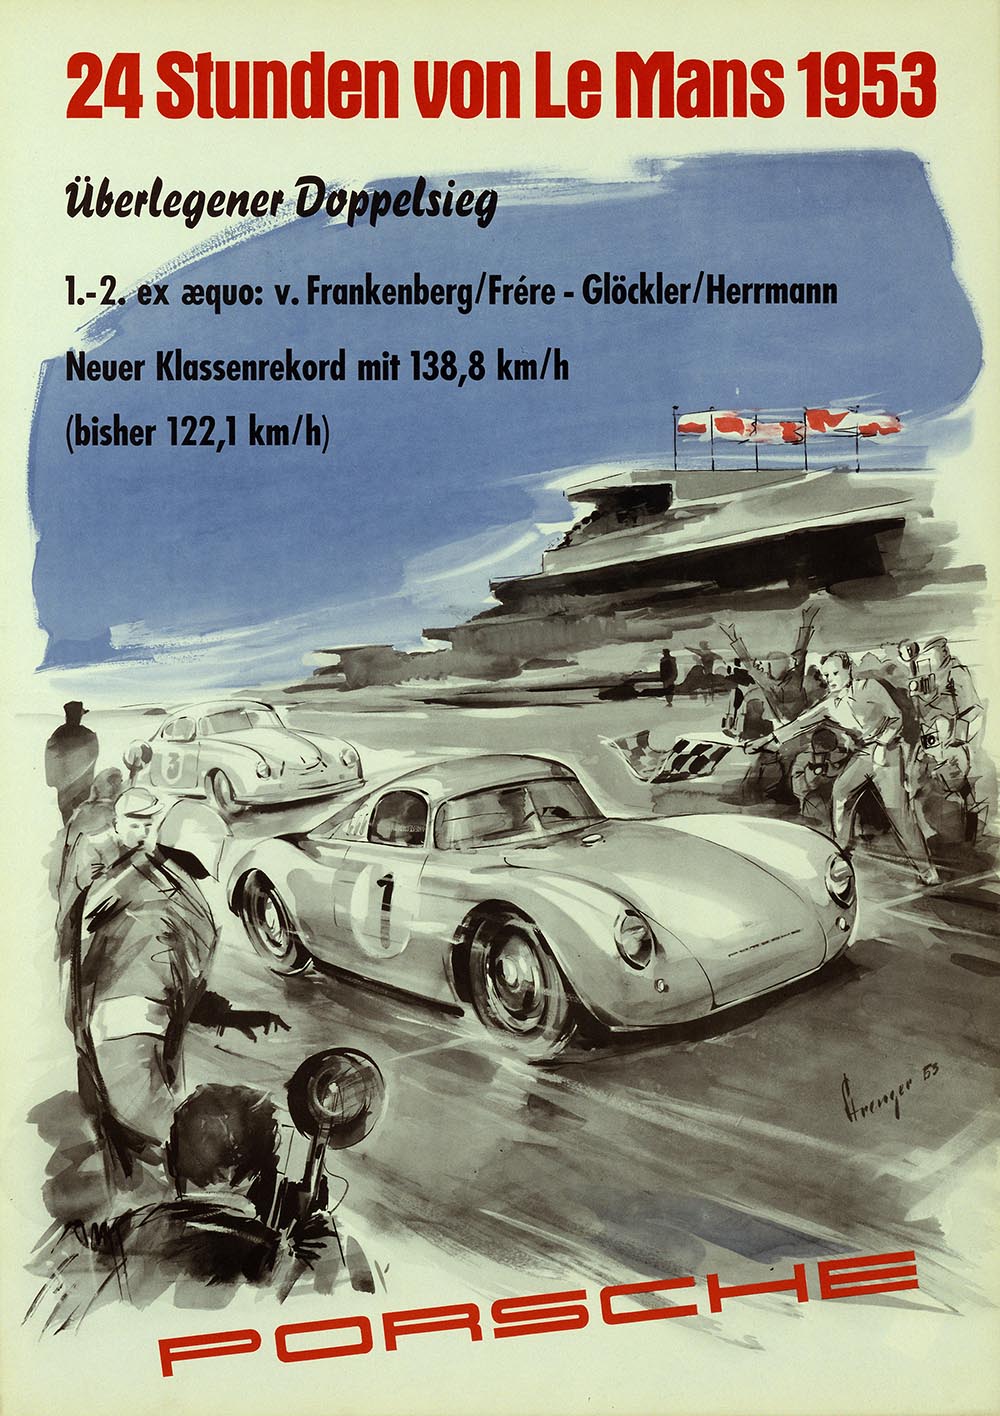 Mit Motorsporterfolgen, hier der Le-Mans-Sieg eines Porsche 356 im Jahr 1953, wurde einst Werbung gemacht.